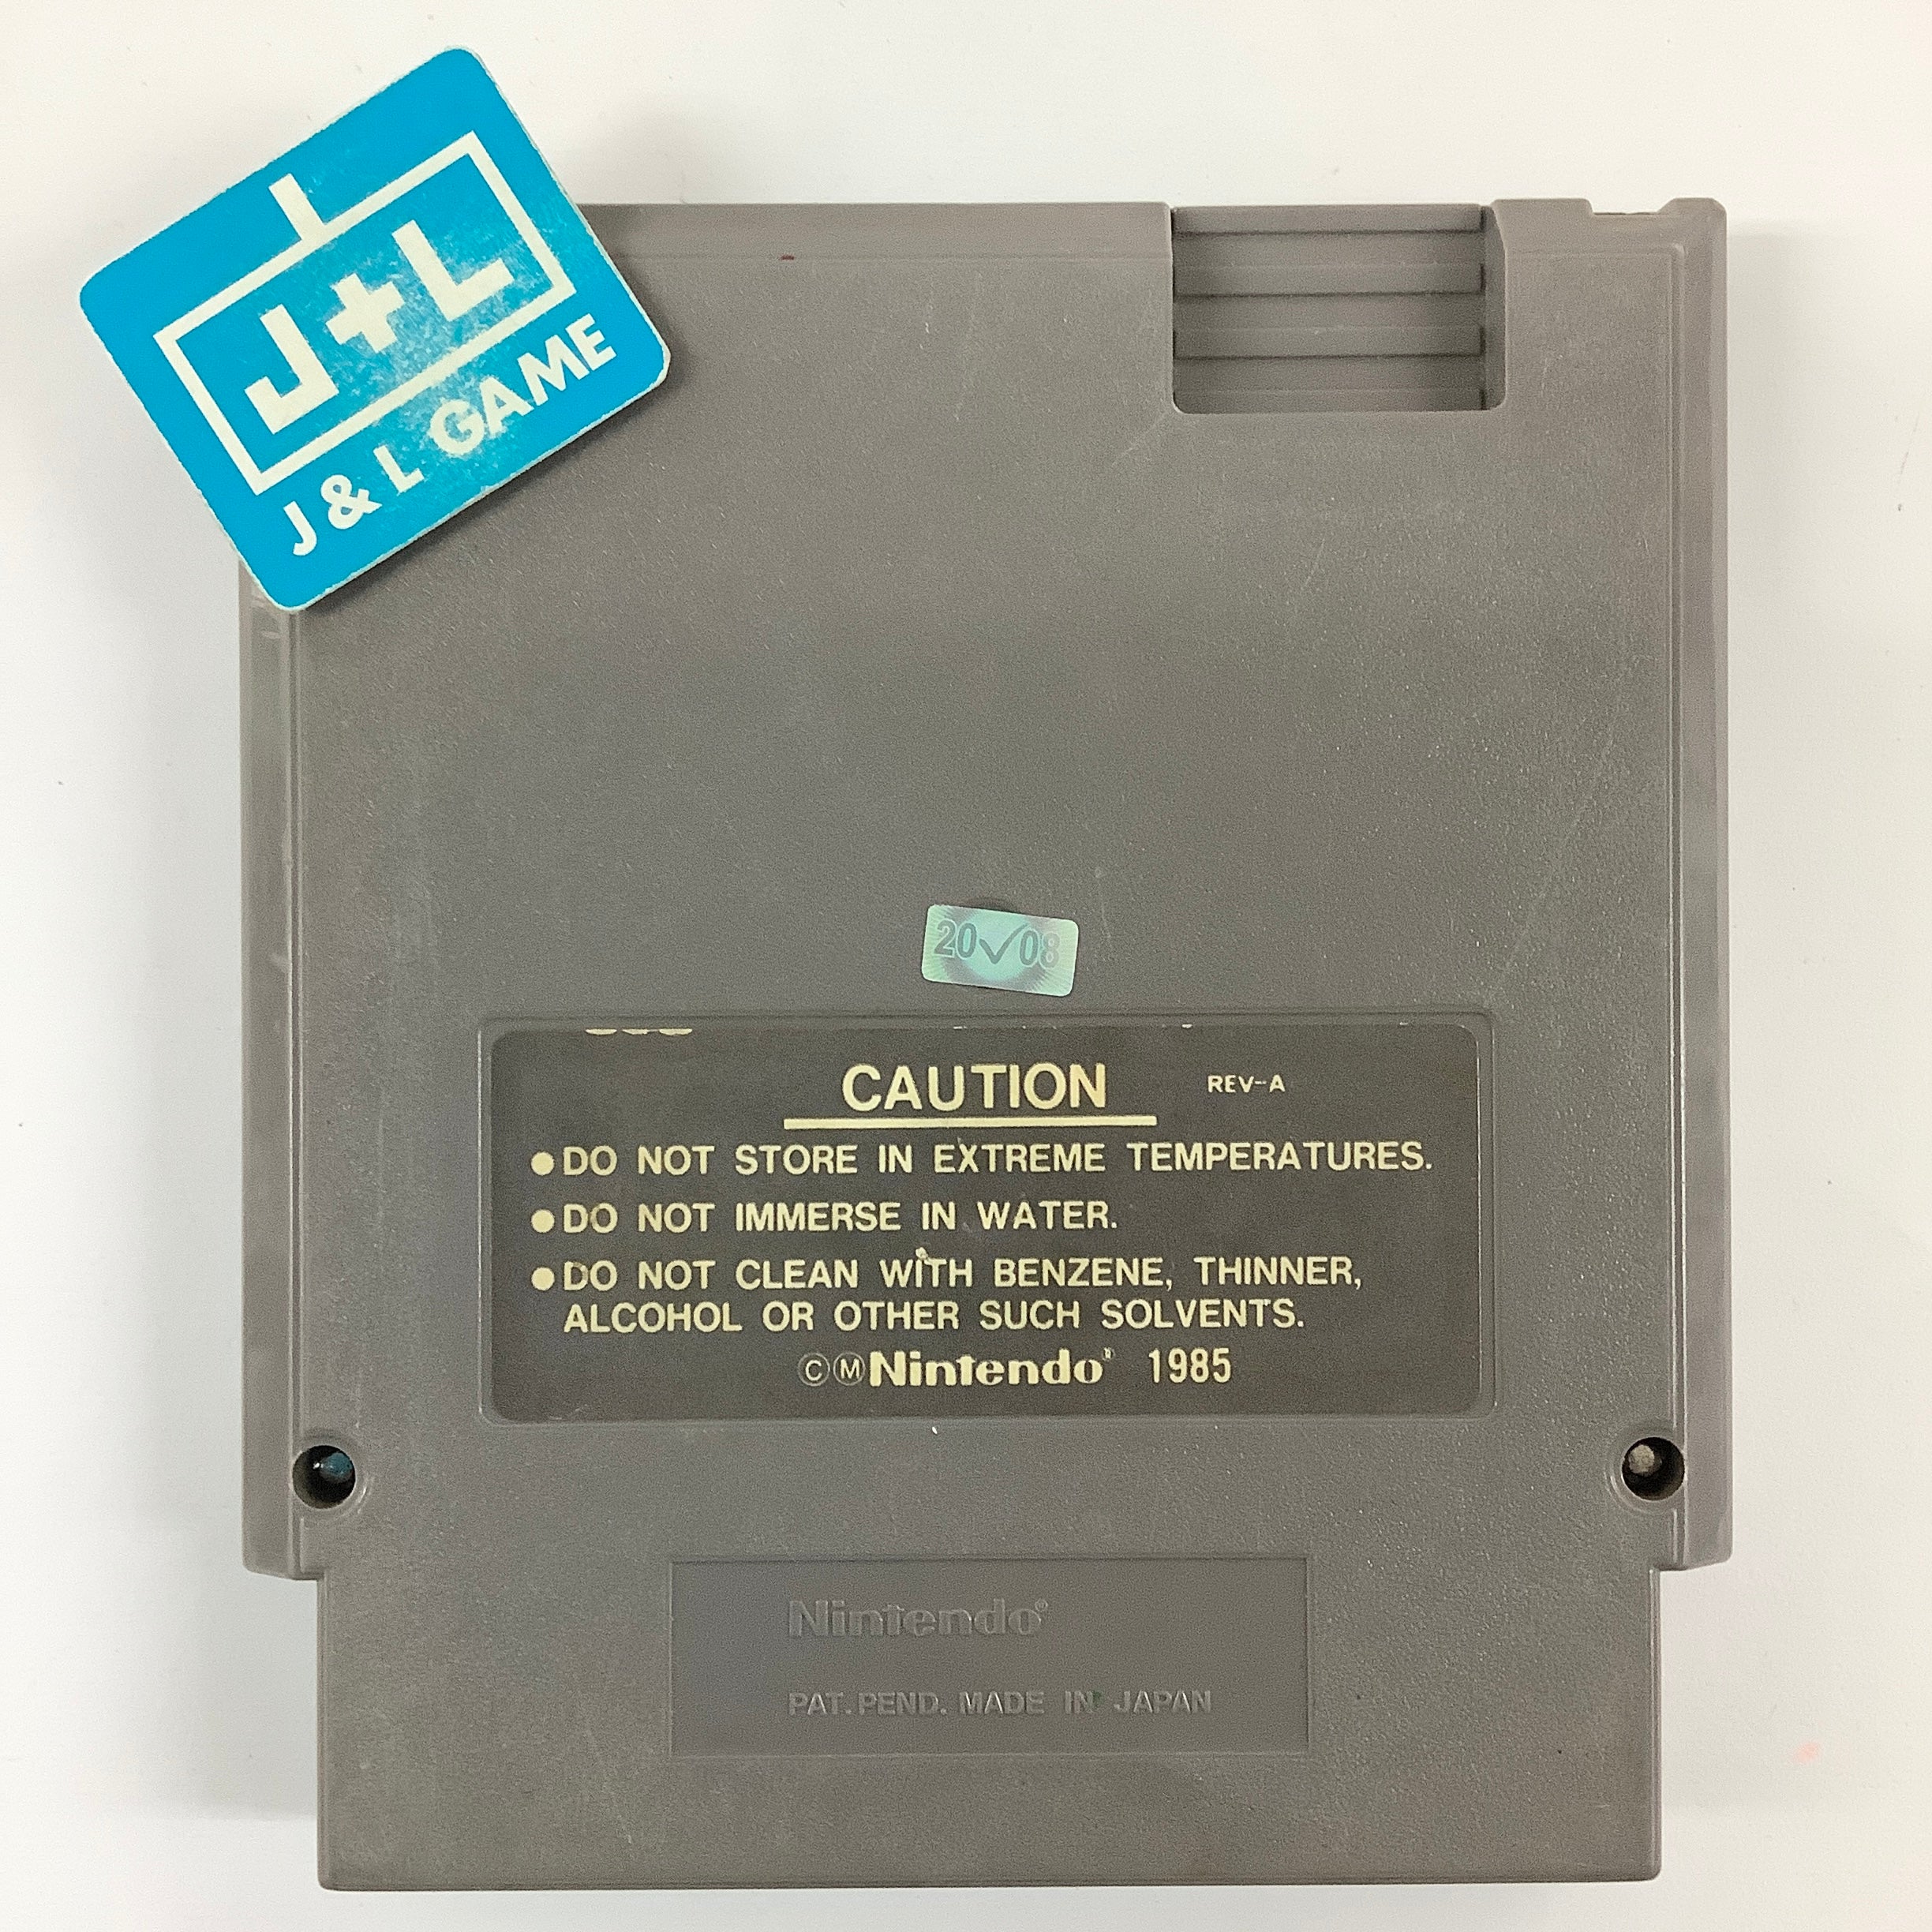 Mega Man 4 - (NES) Nintendo Entertainment System  [Pre-Owned] Video Games Capcom   